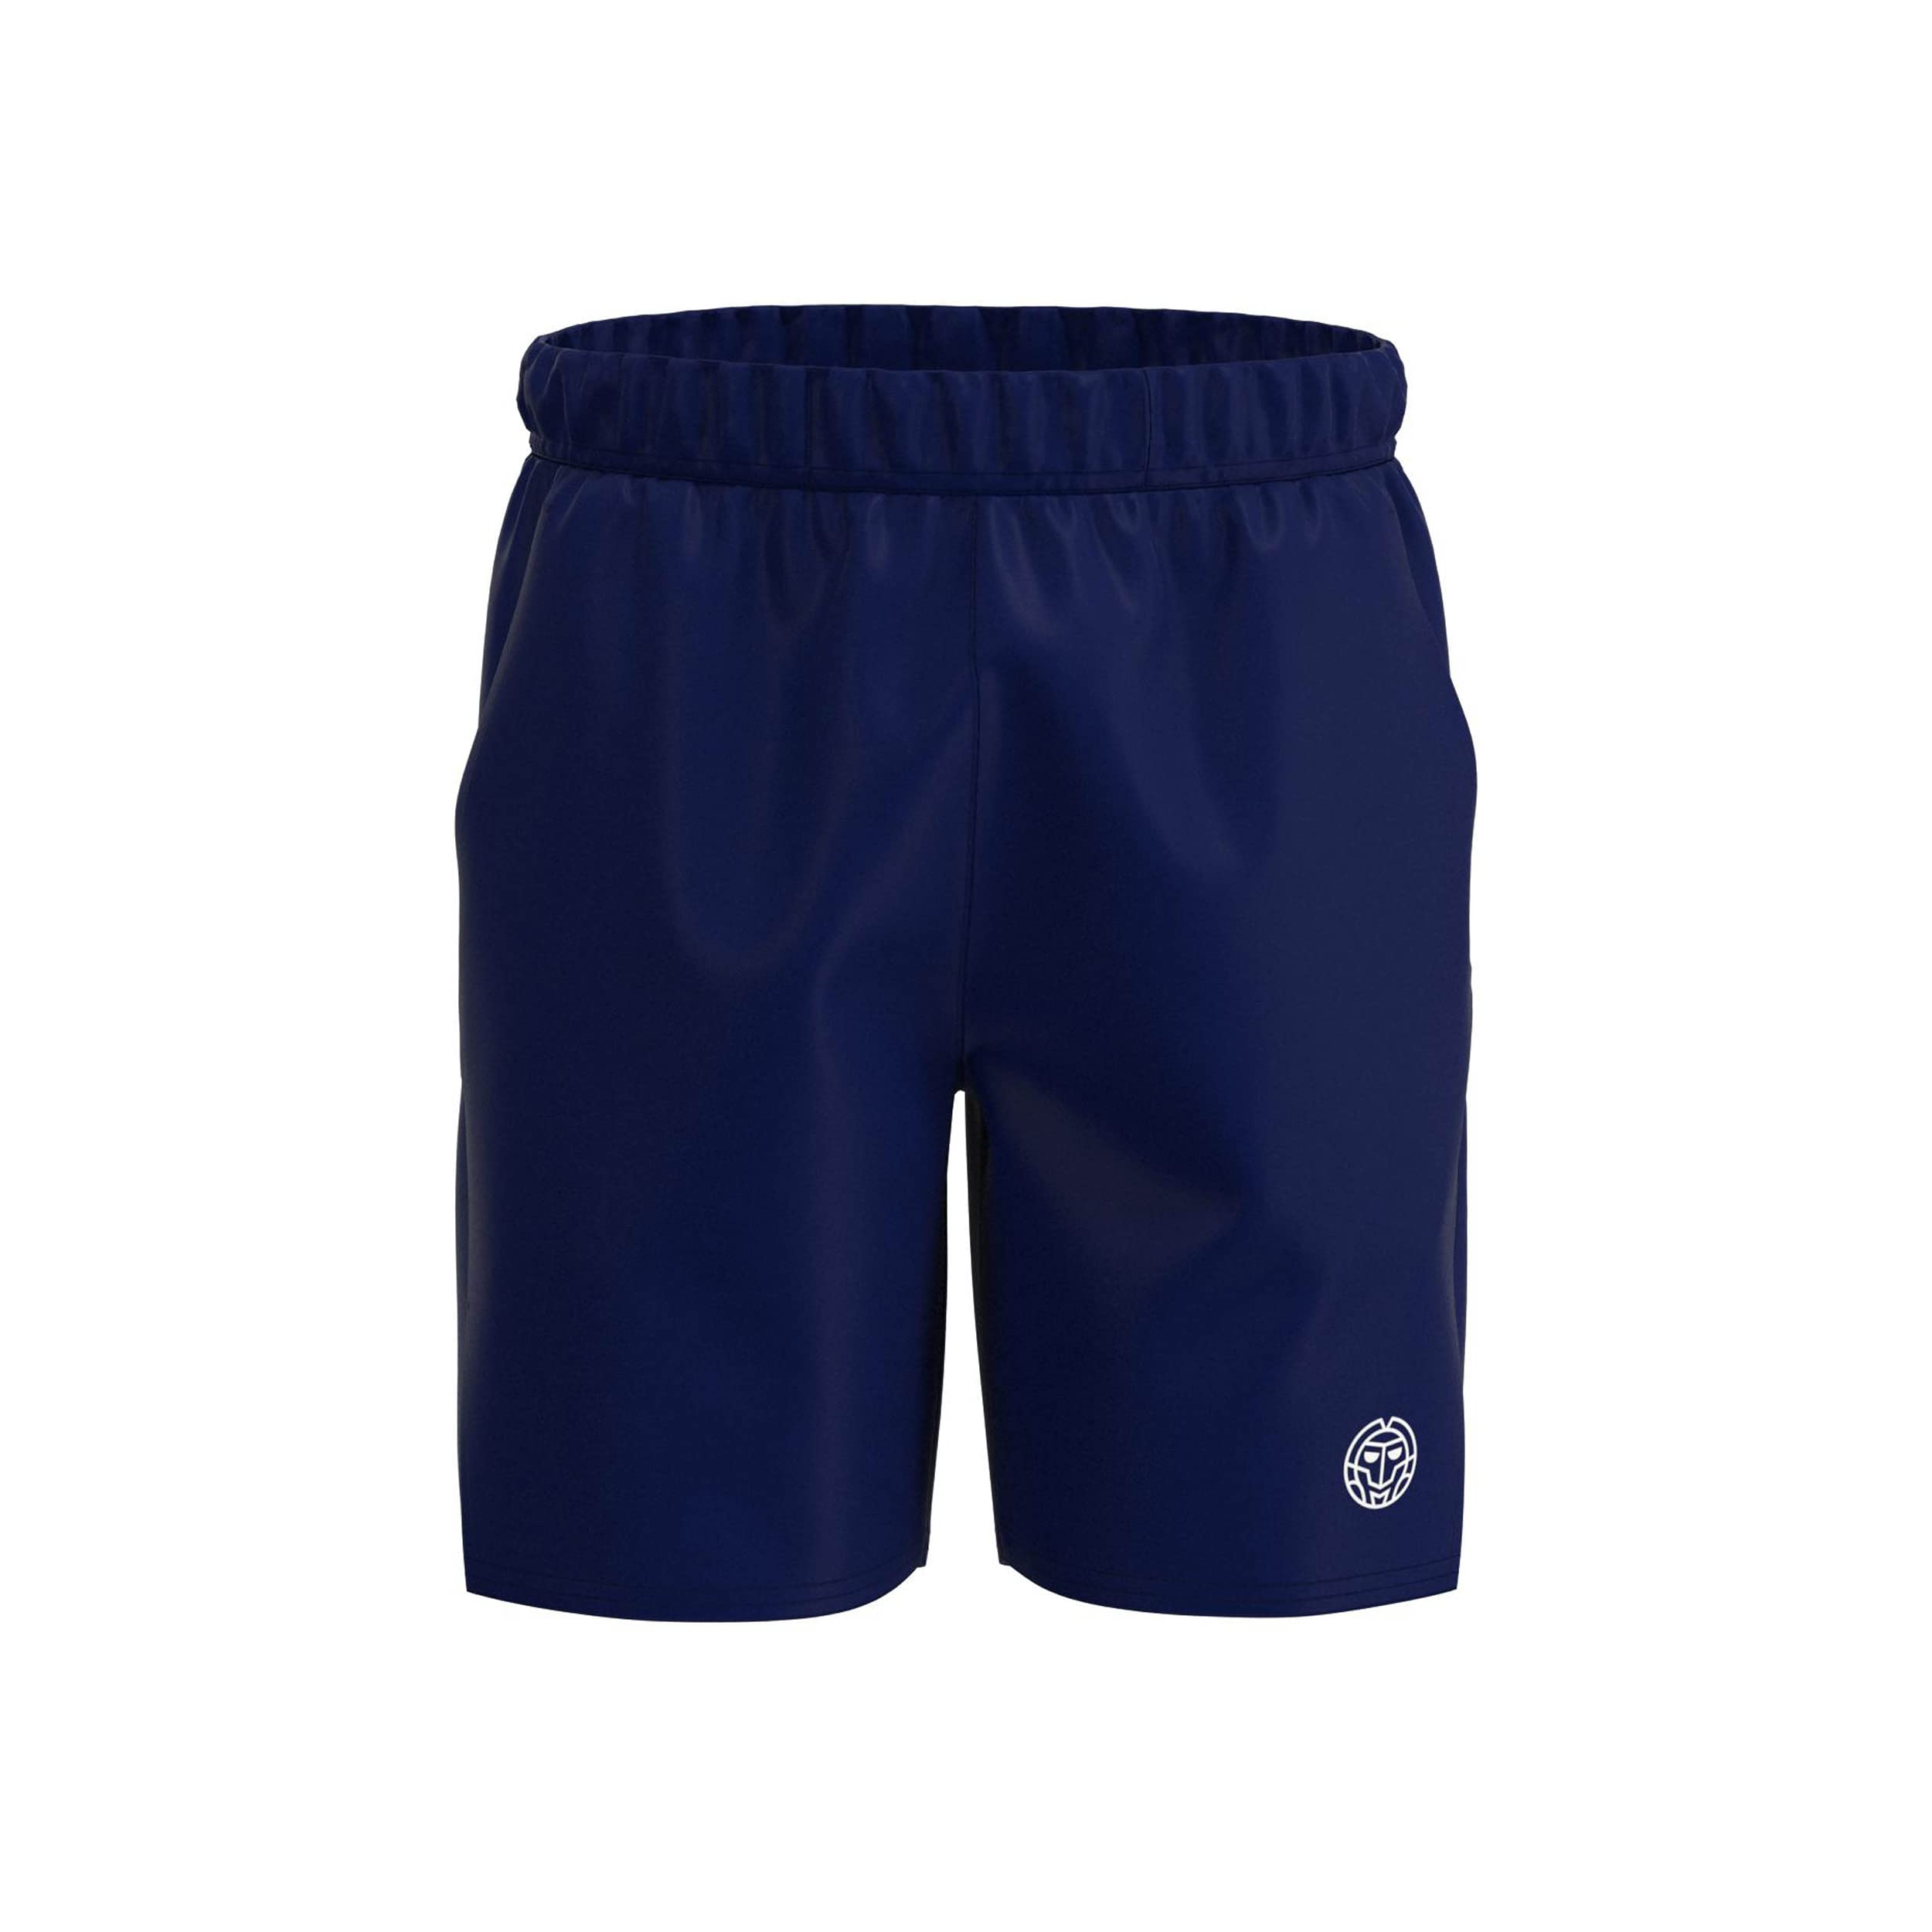 BIDI BADU Herren Crew 7Inch Shorts - Dark Blue, Größe:S